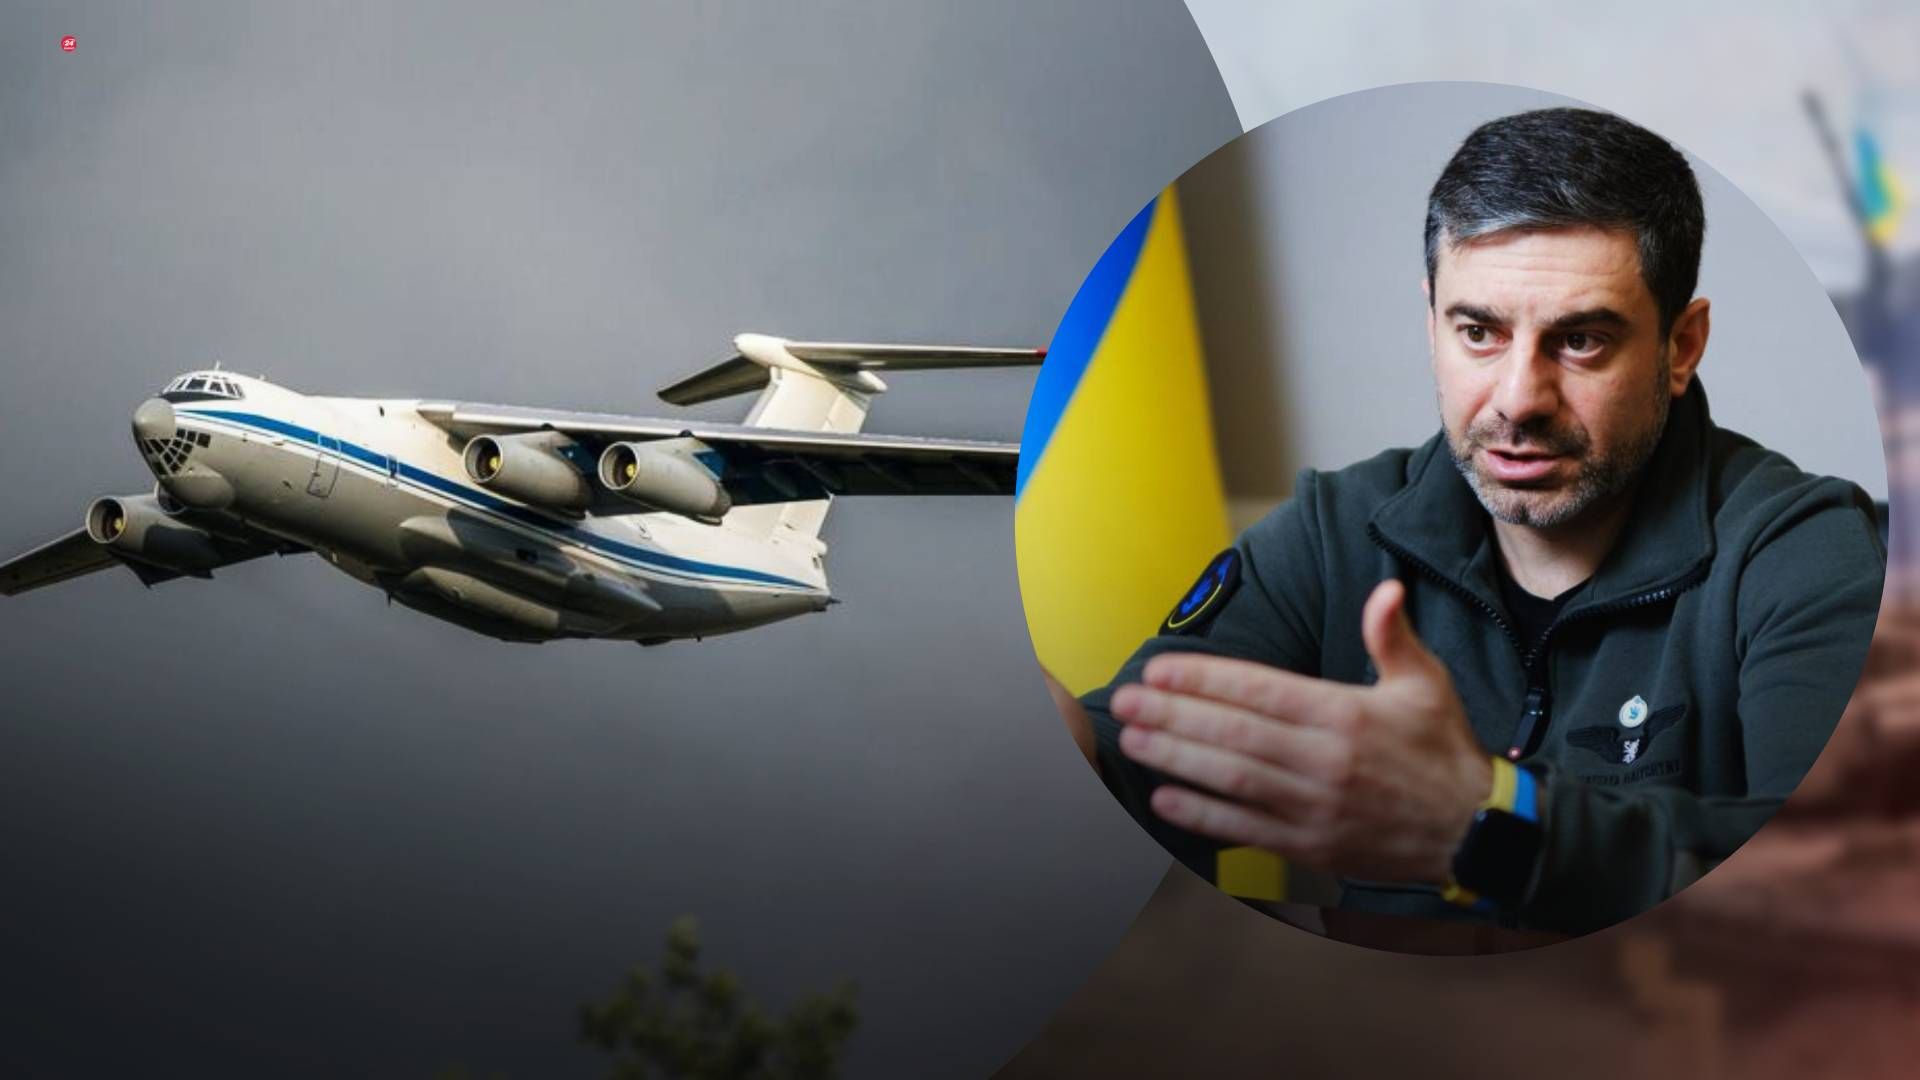 Ситуация с падением Ил-76 требует расследования